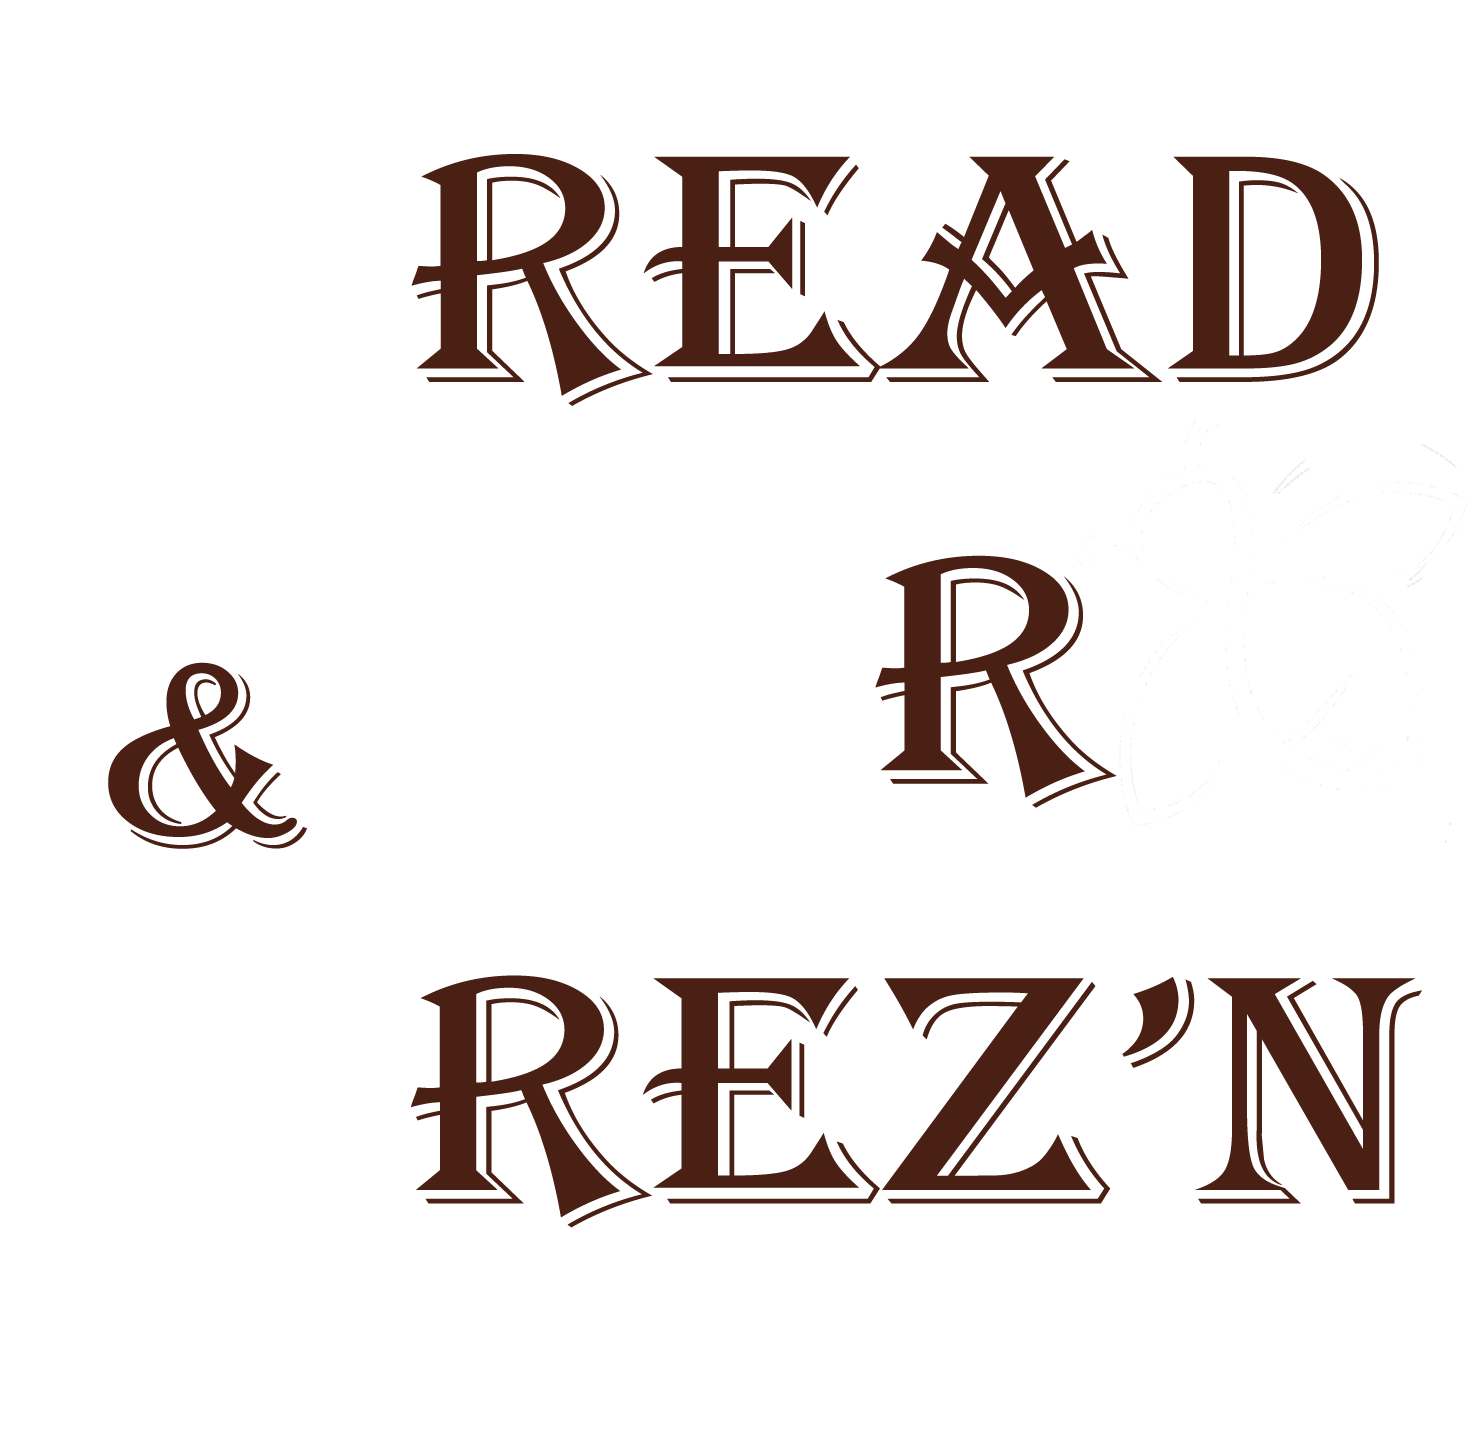 Bread, Beer & Brez'n - Bb&b - Bread, Beer & Brez'n (1573x1571), Png Download